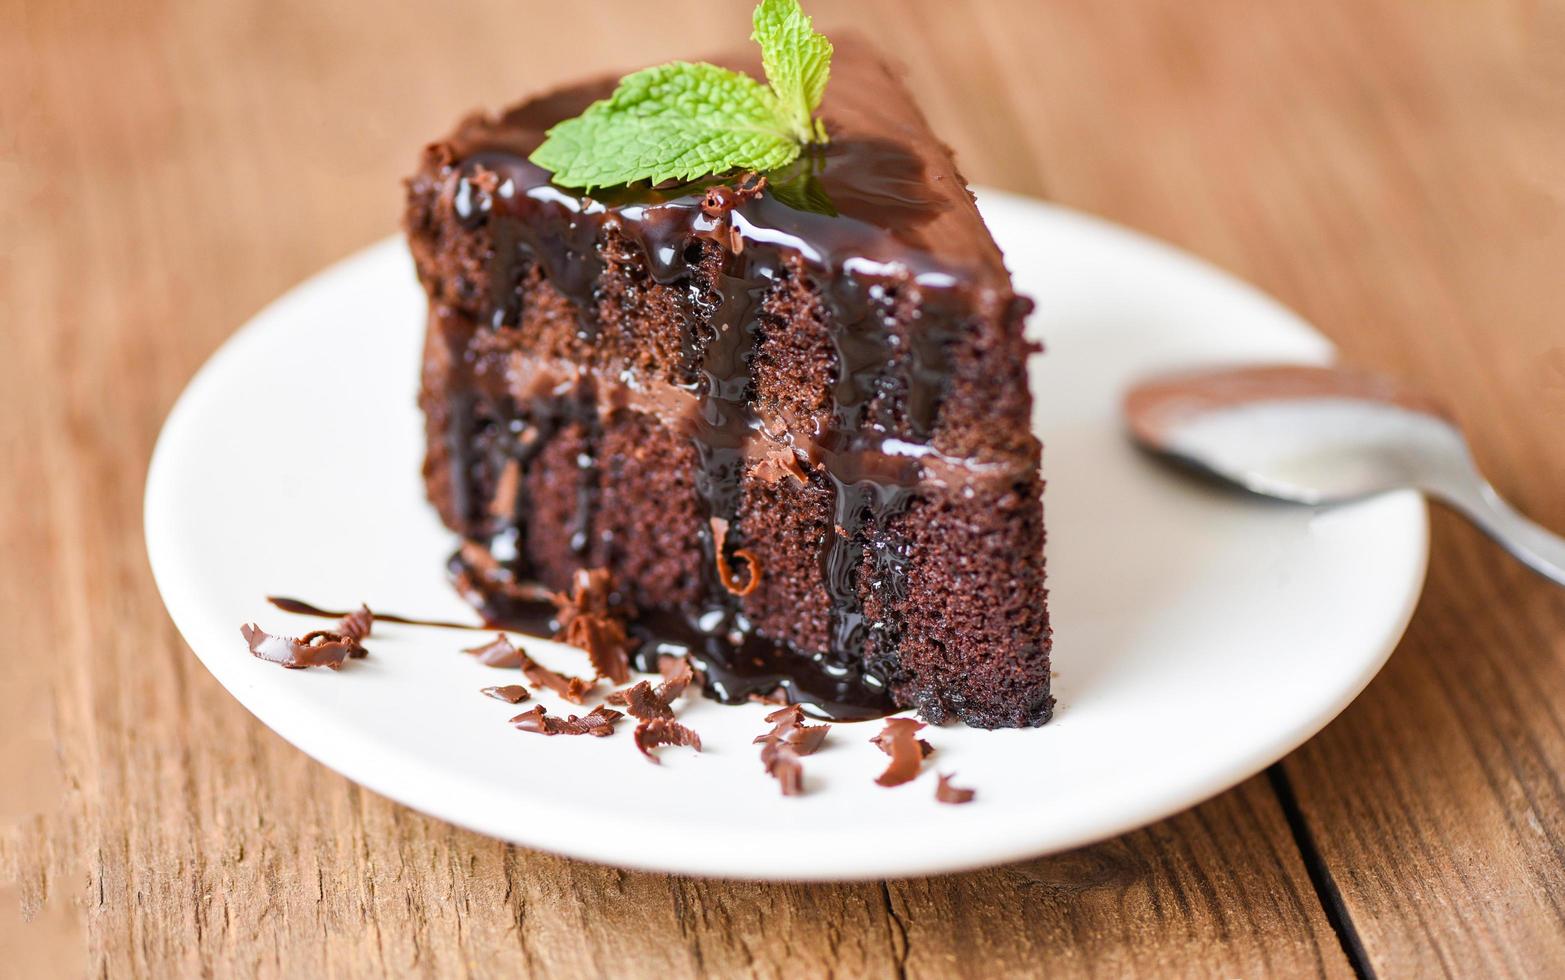 gâteau sauce au chocolat délicieux dessert servi sur la table - tranche de gâteau sur plaque blanche avec garniture au chocolat et feuille de menthe photo